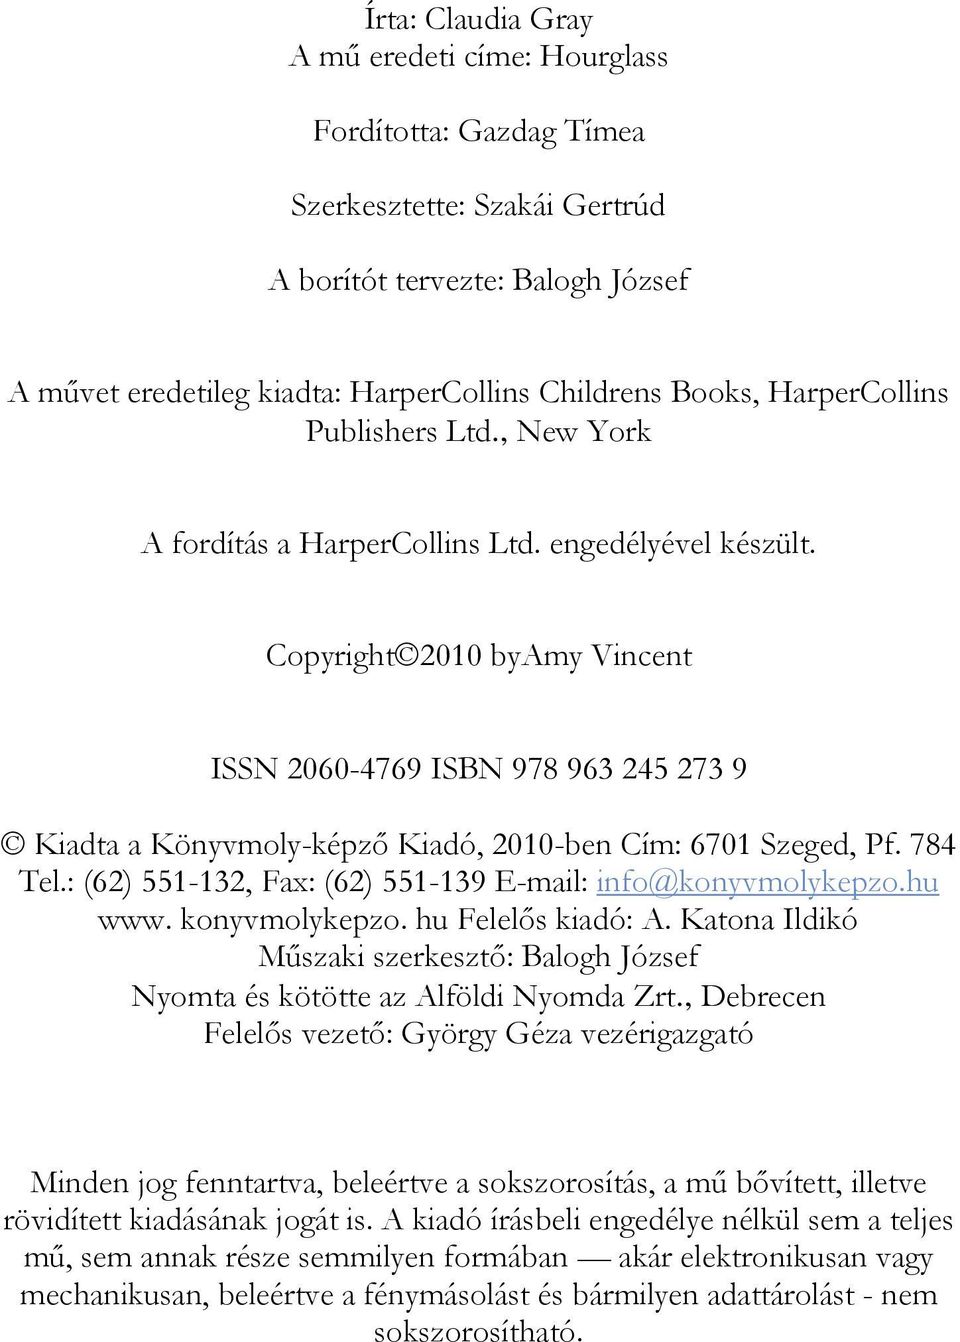 Copyright 2010 byamy Vincent ISSN 2060-4769 ISBN 978 963 245 273 9 Kiadta a Könyvmoly-képző Kiadó, 2010-ben Cím: 6701 Szeged, Pf. 784 Tel.: (62) 551-132, Fax: (62) 551-139 E-mail: info@konyvmolykepzo.